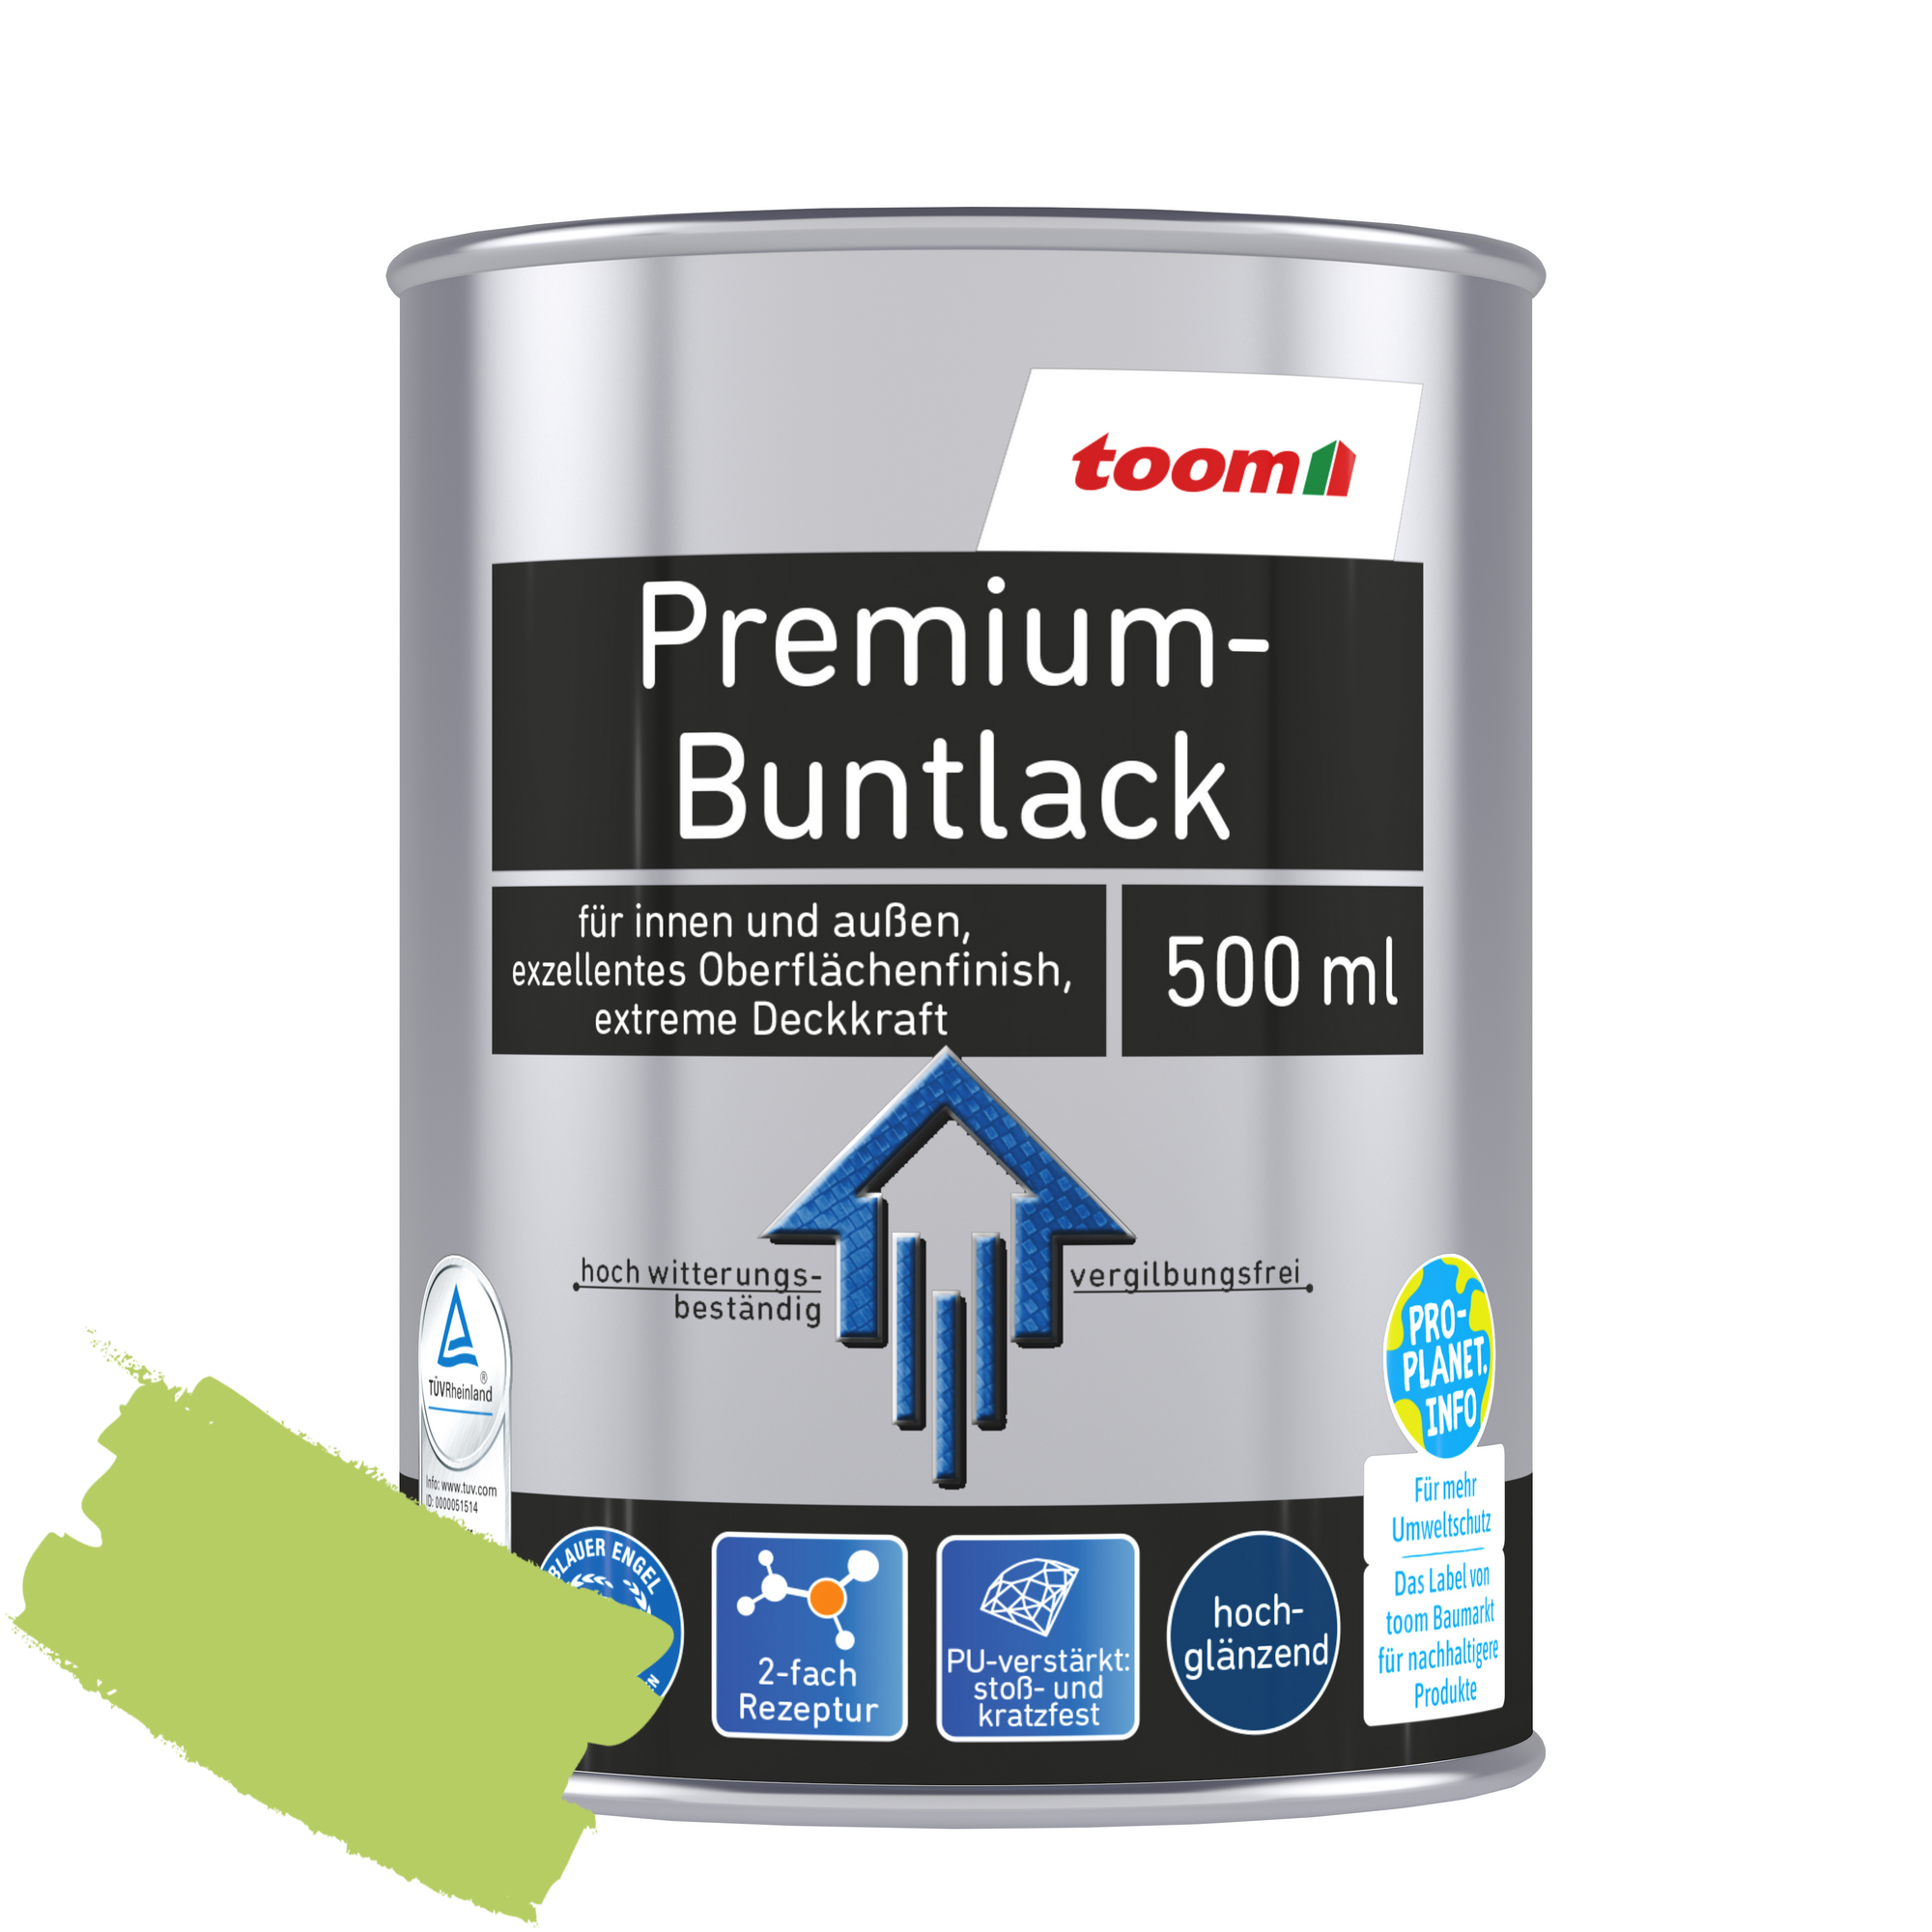 Premium-Buntlack hellgrün glänzend 500 ml + product picture